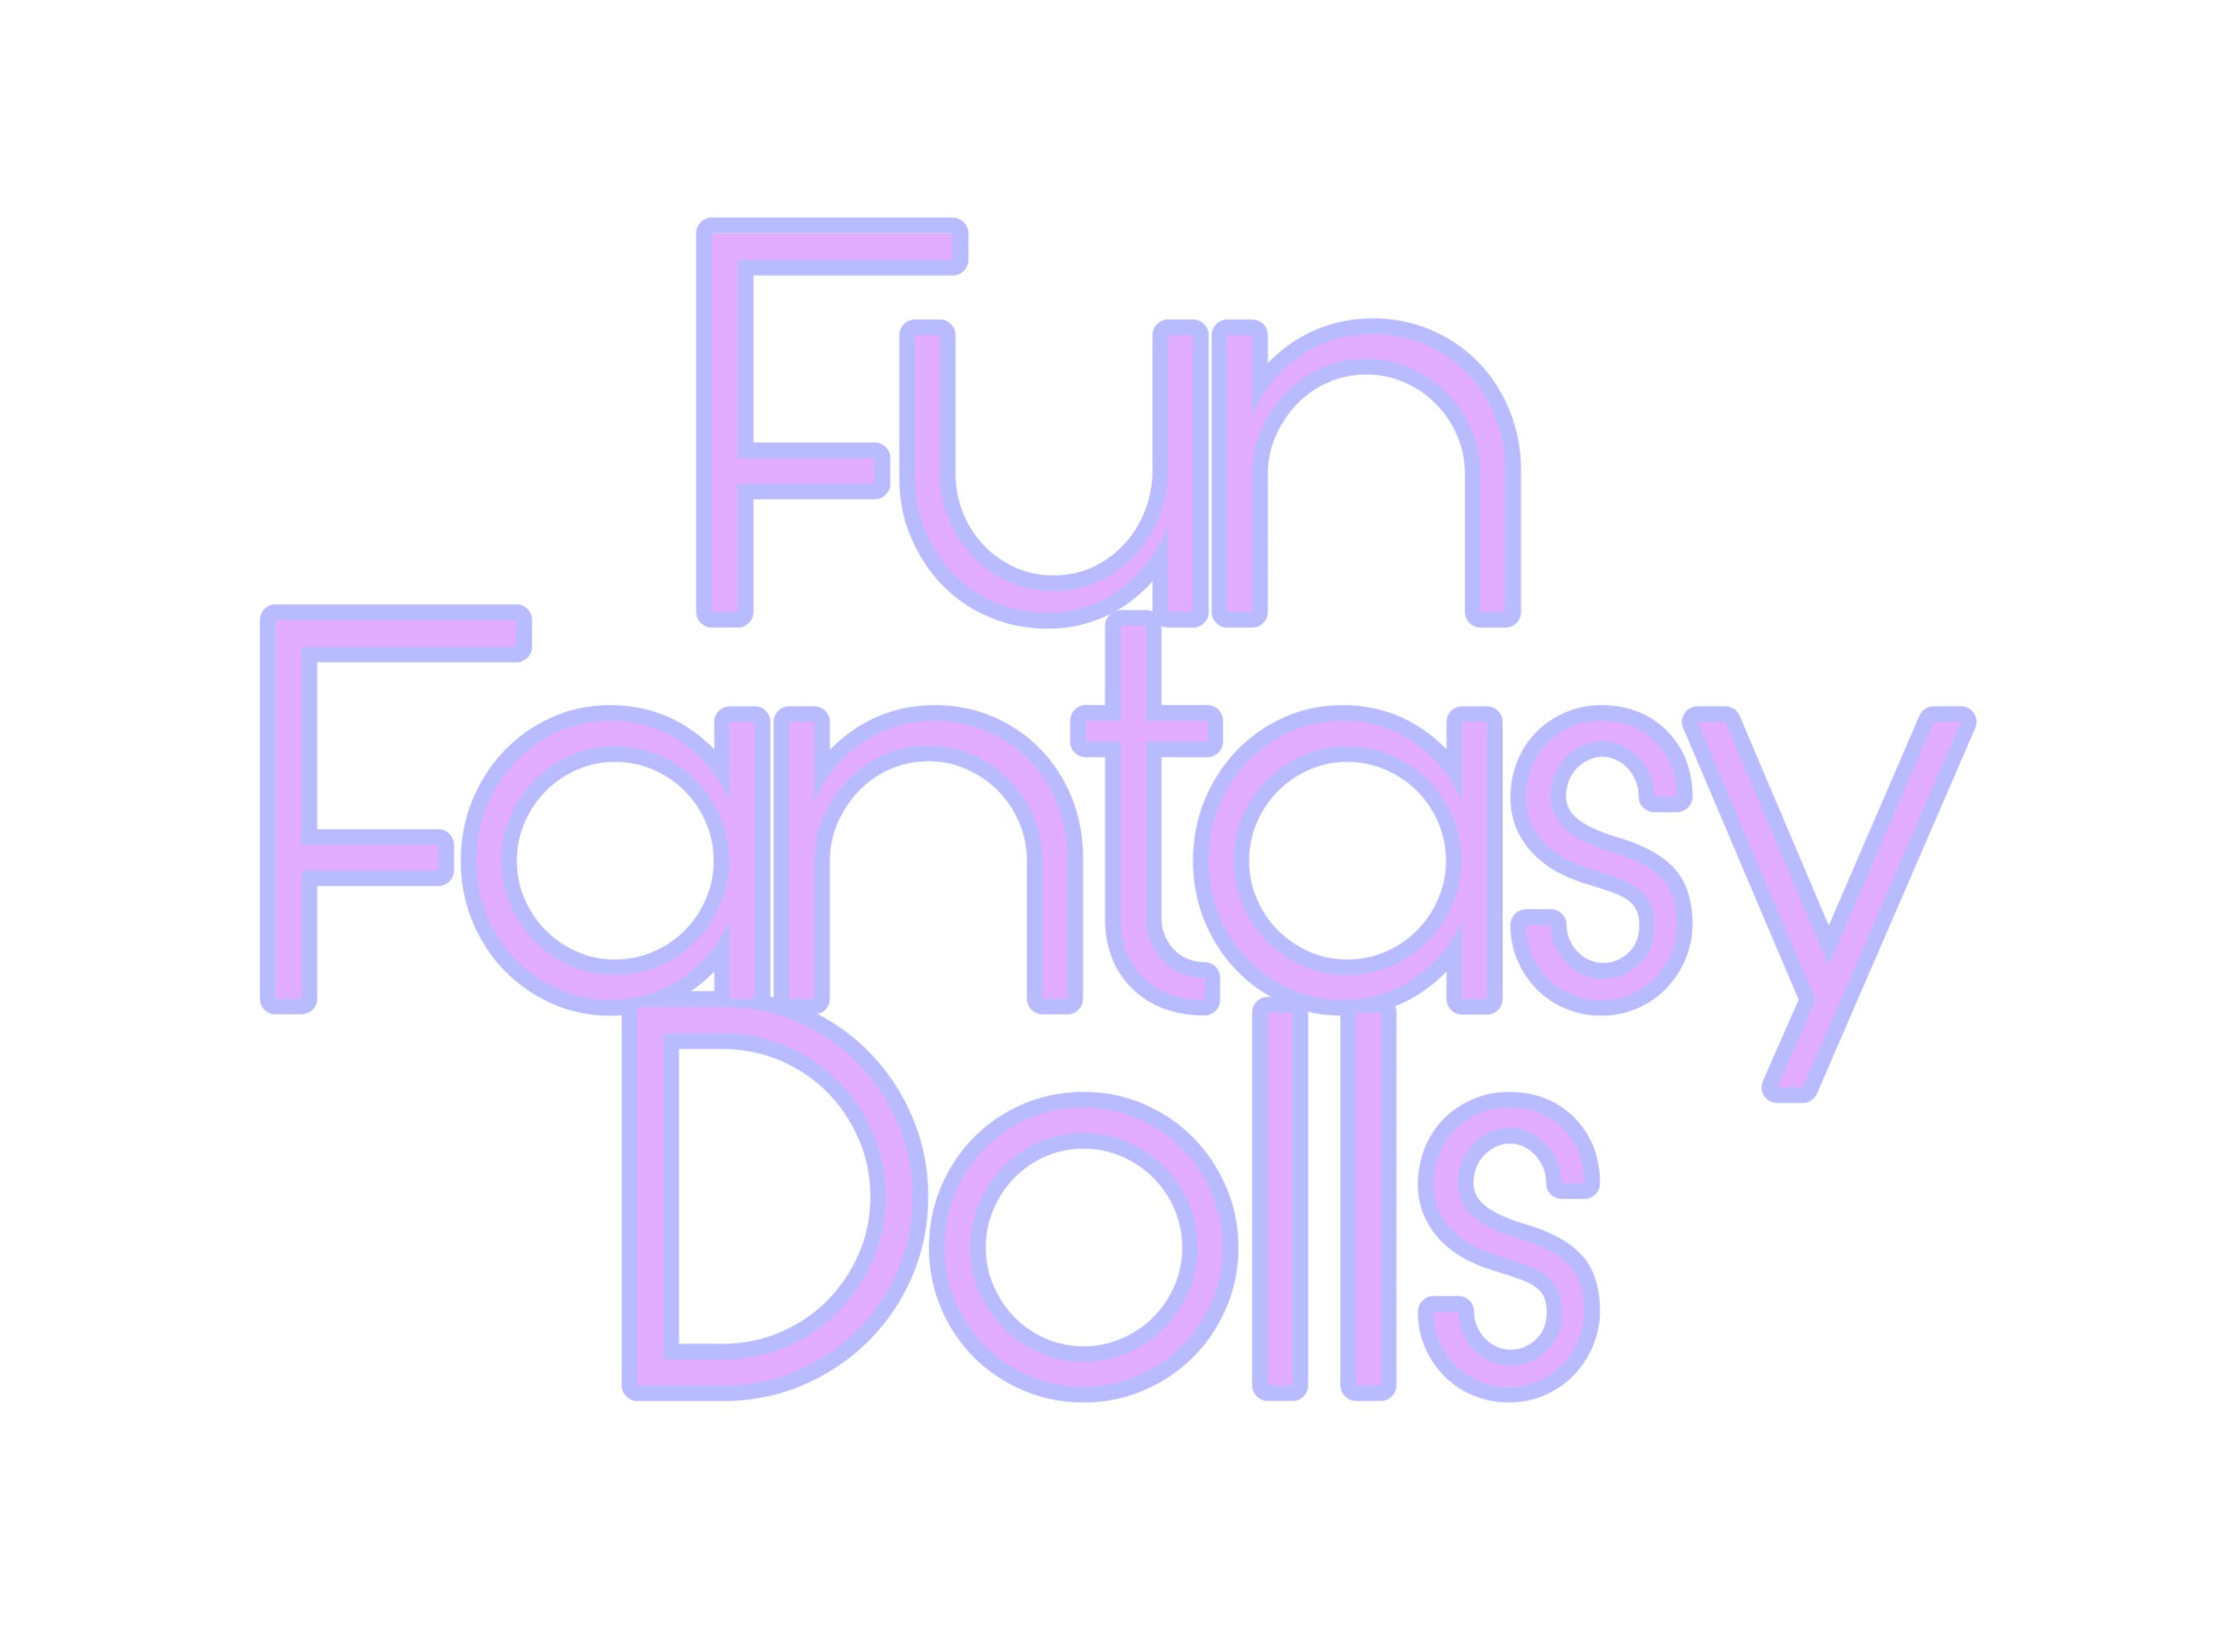 Fun Fantasy Dolls